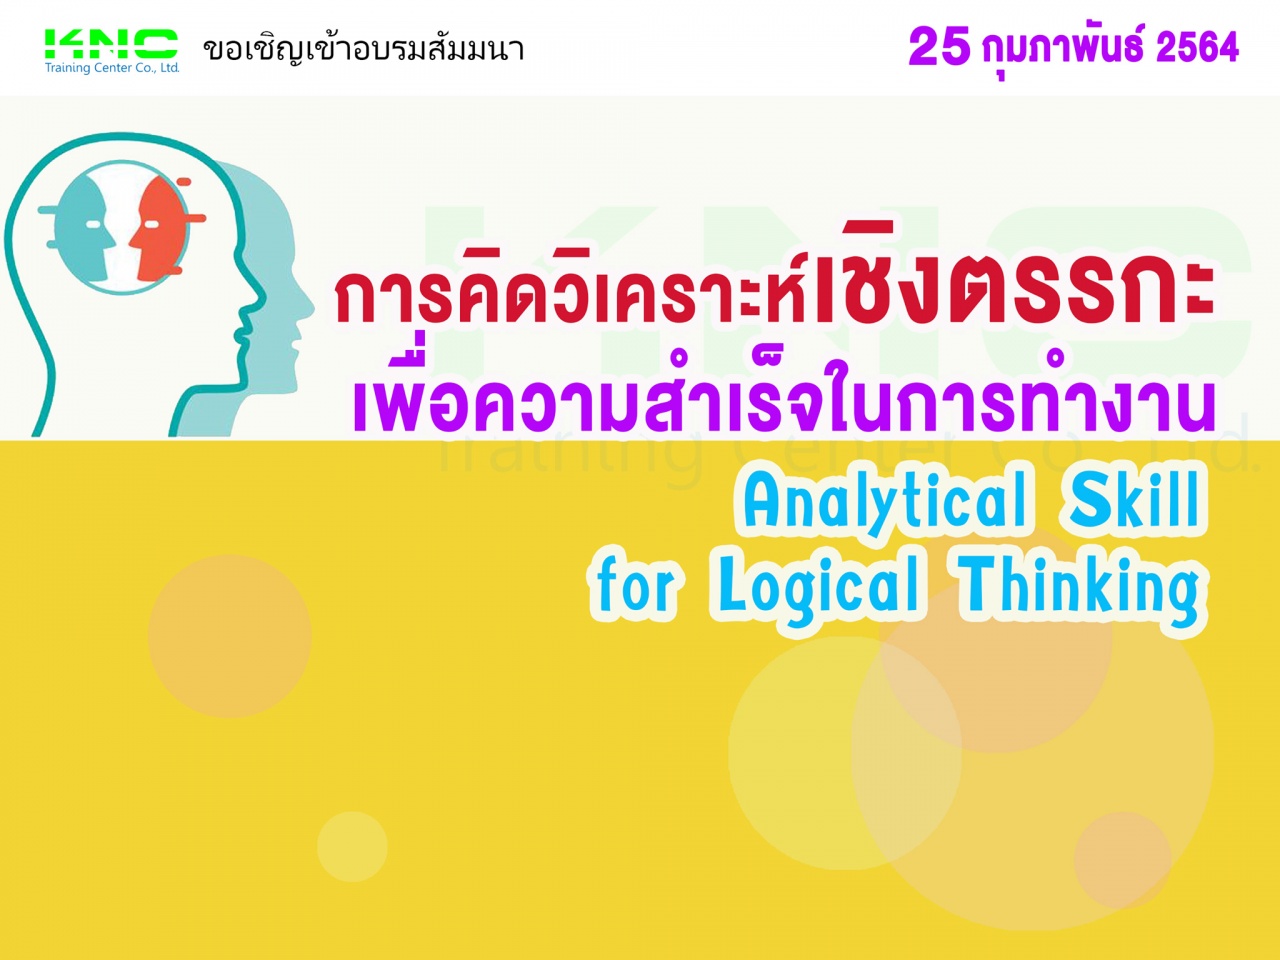 การคิดวิเคราะห์เชิงตรรกะเพื่อความสำเร็จในการทำงาน (Analytical Skill for Logical Thinking)